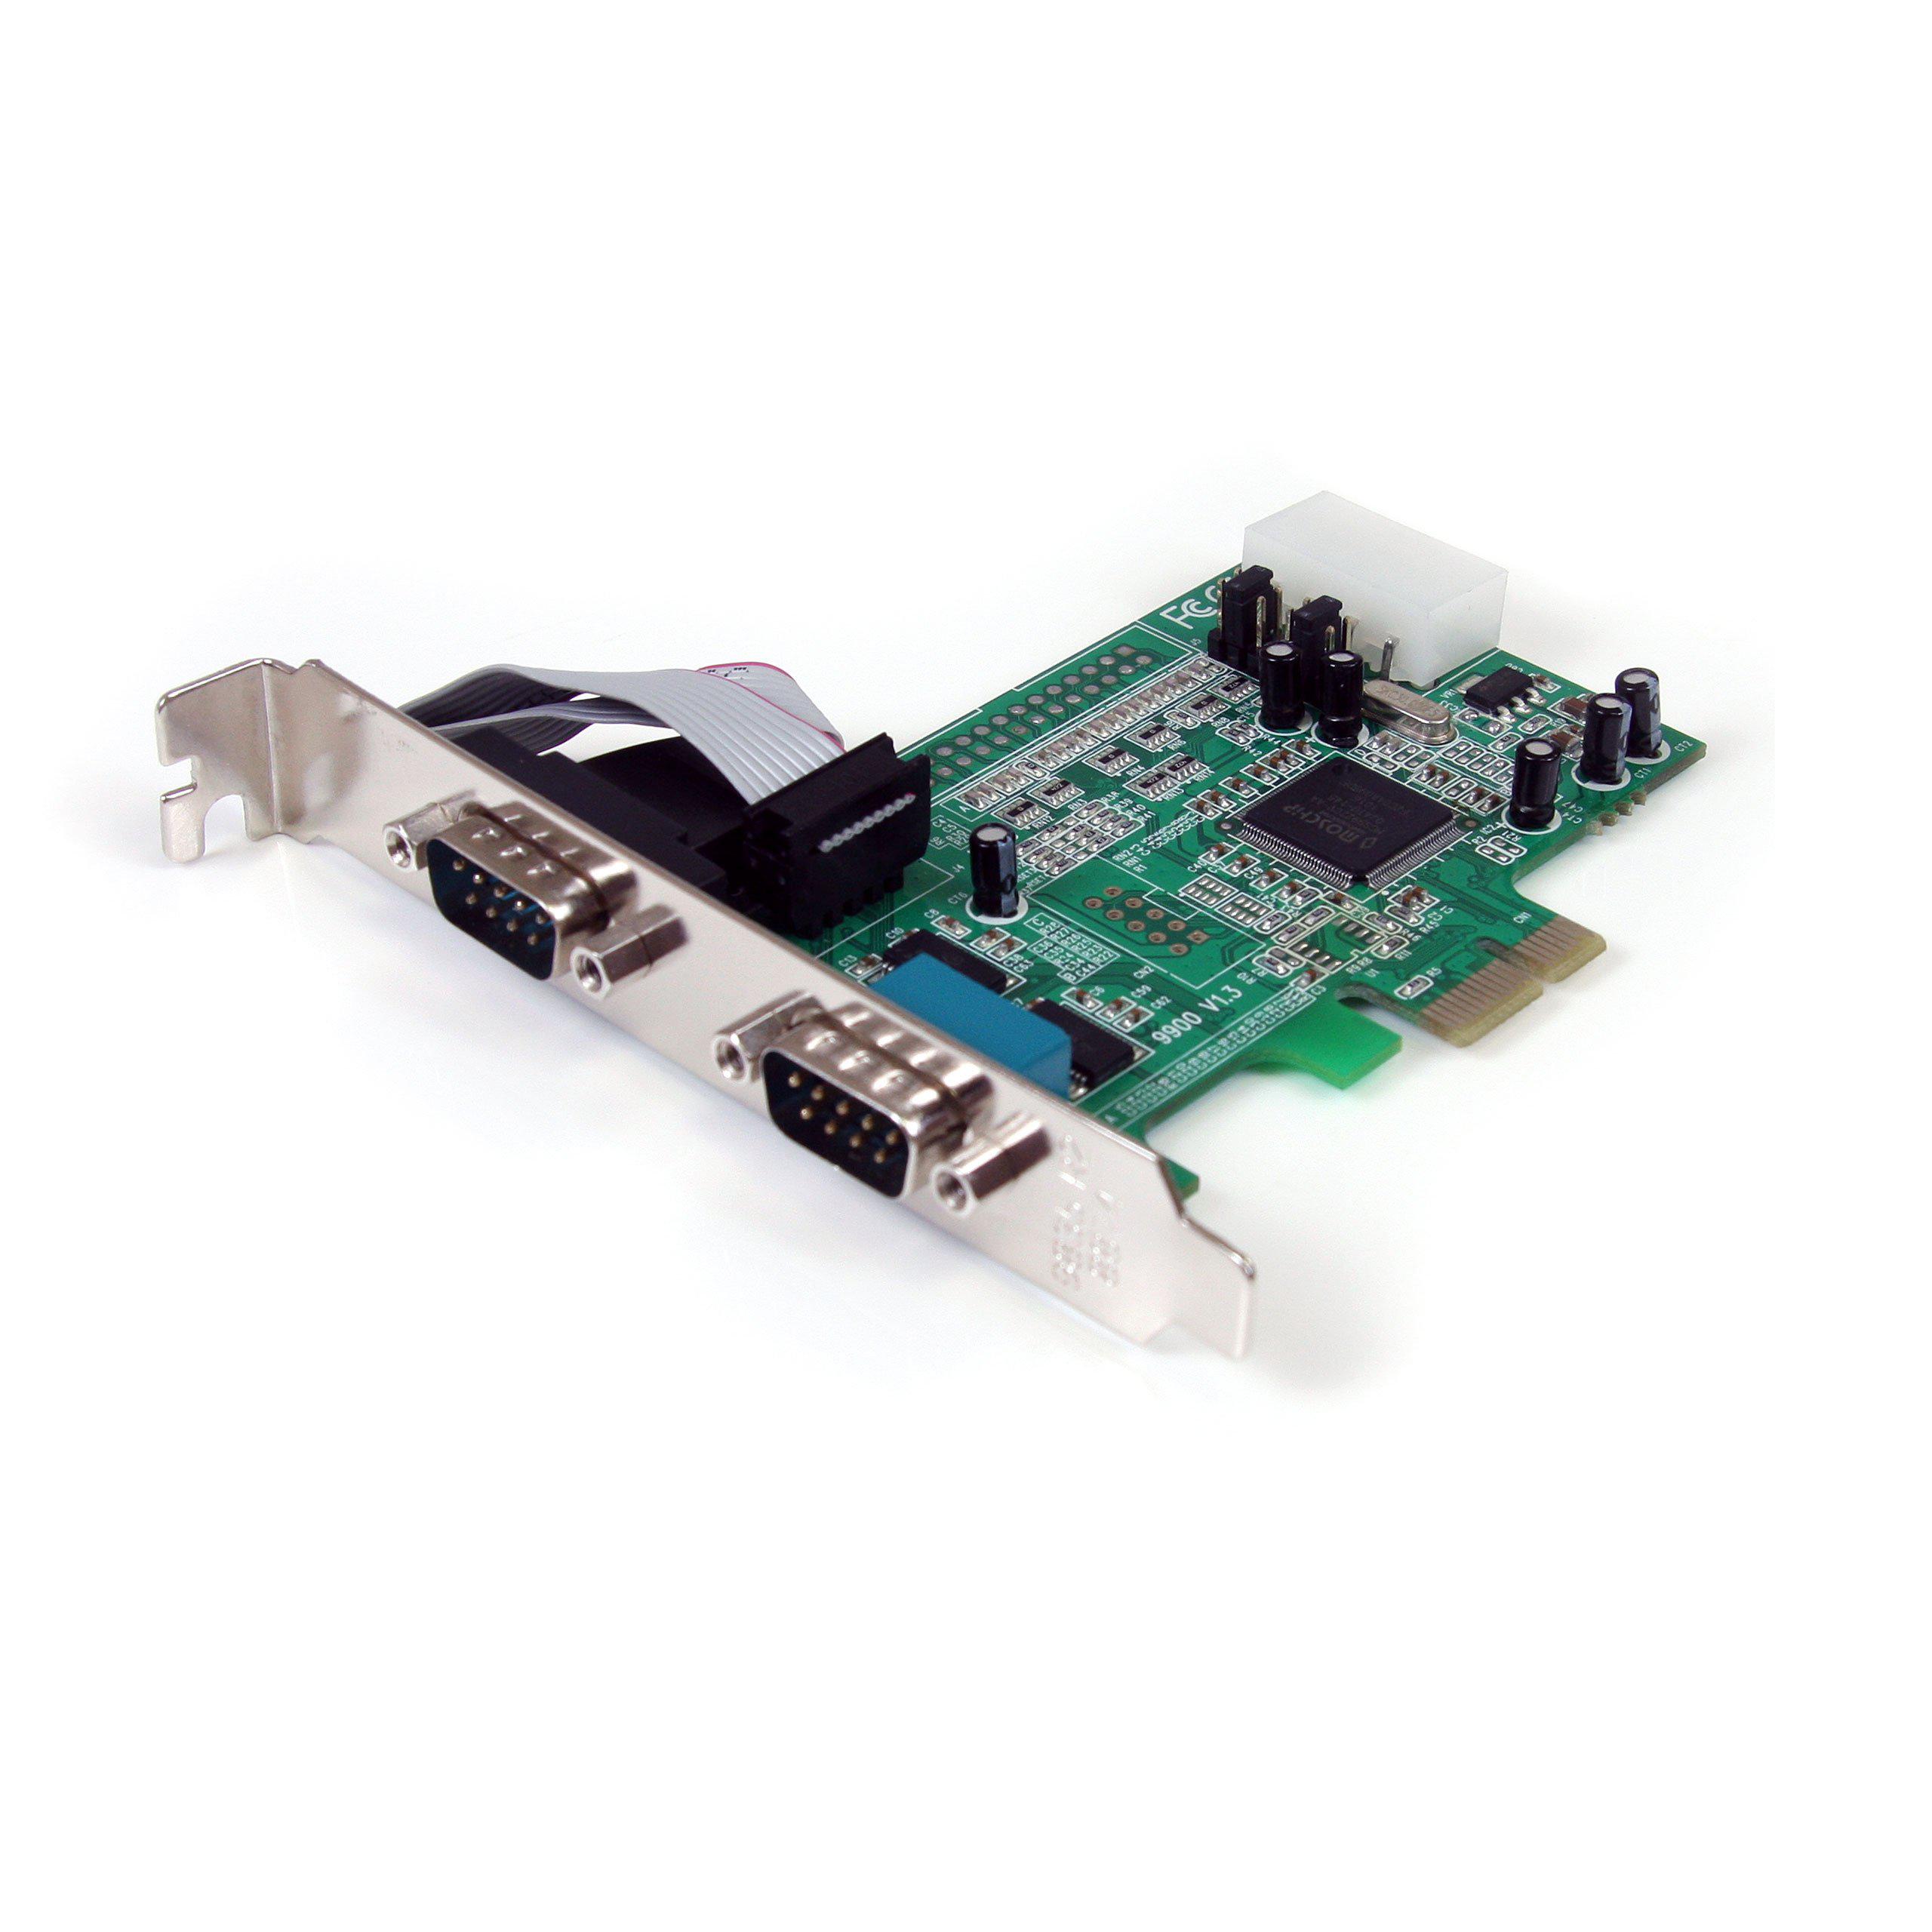 startech.com 2-port pci express rs232 serial adapter card - pcie rs232 serial host controller card - pcie to dual serial db9 